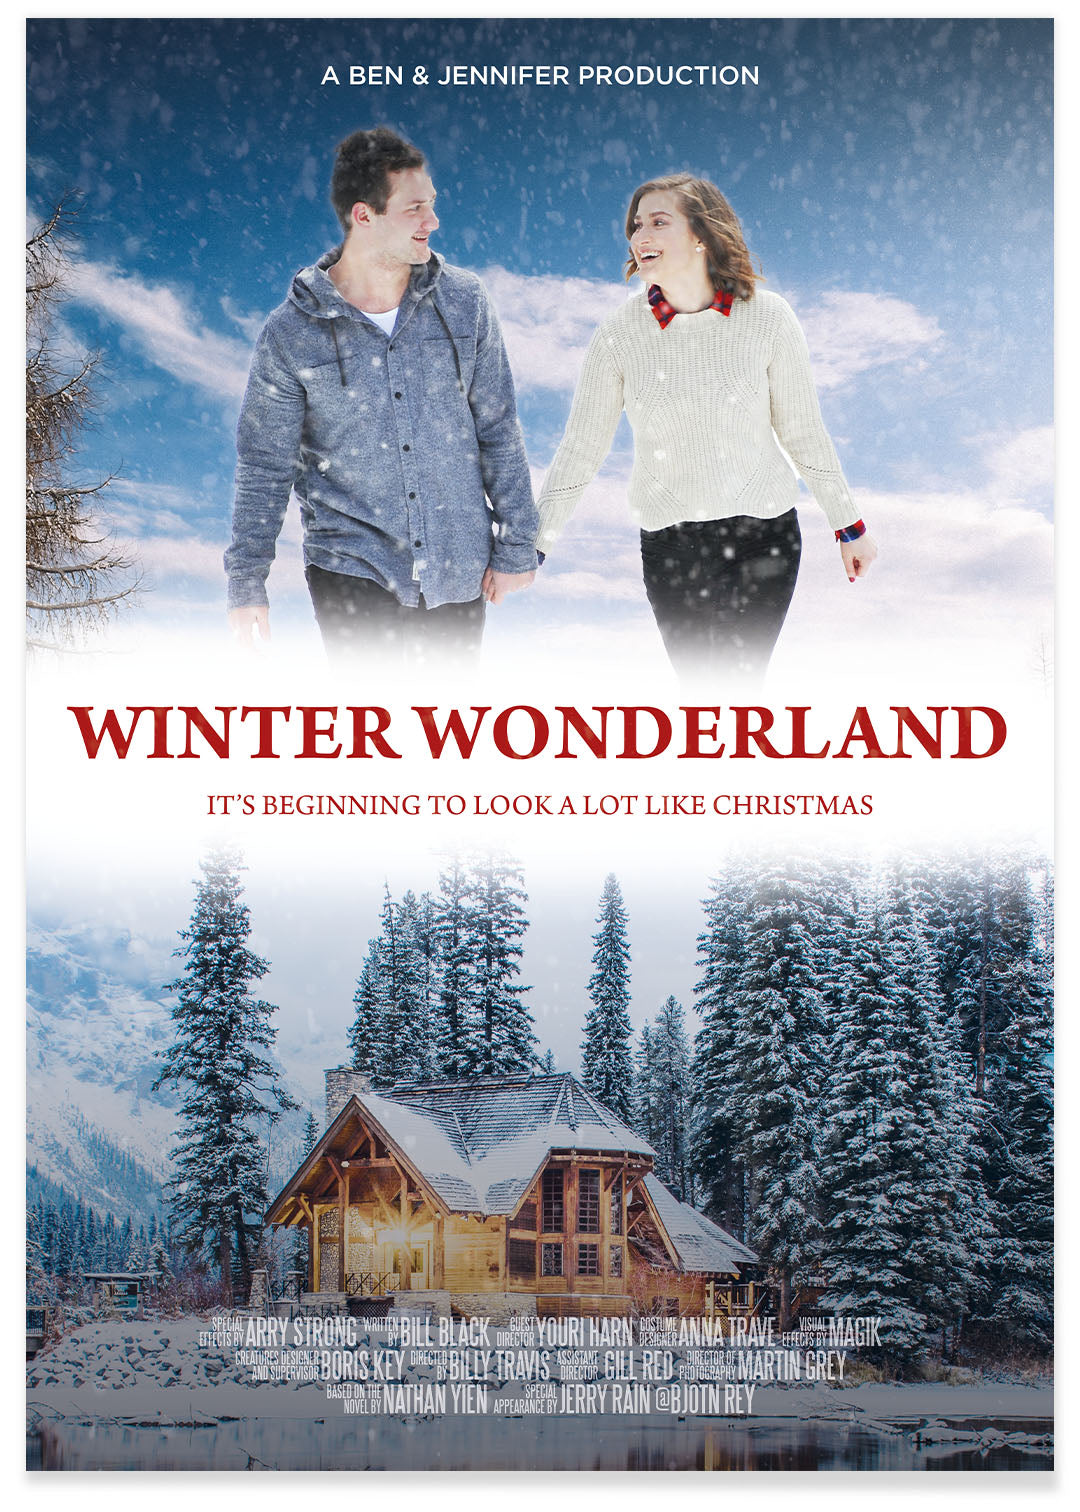 Weihnachtsfilm-Poster "Winter Wonderland"